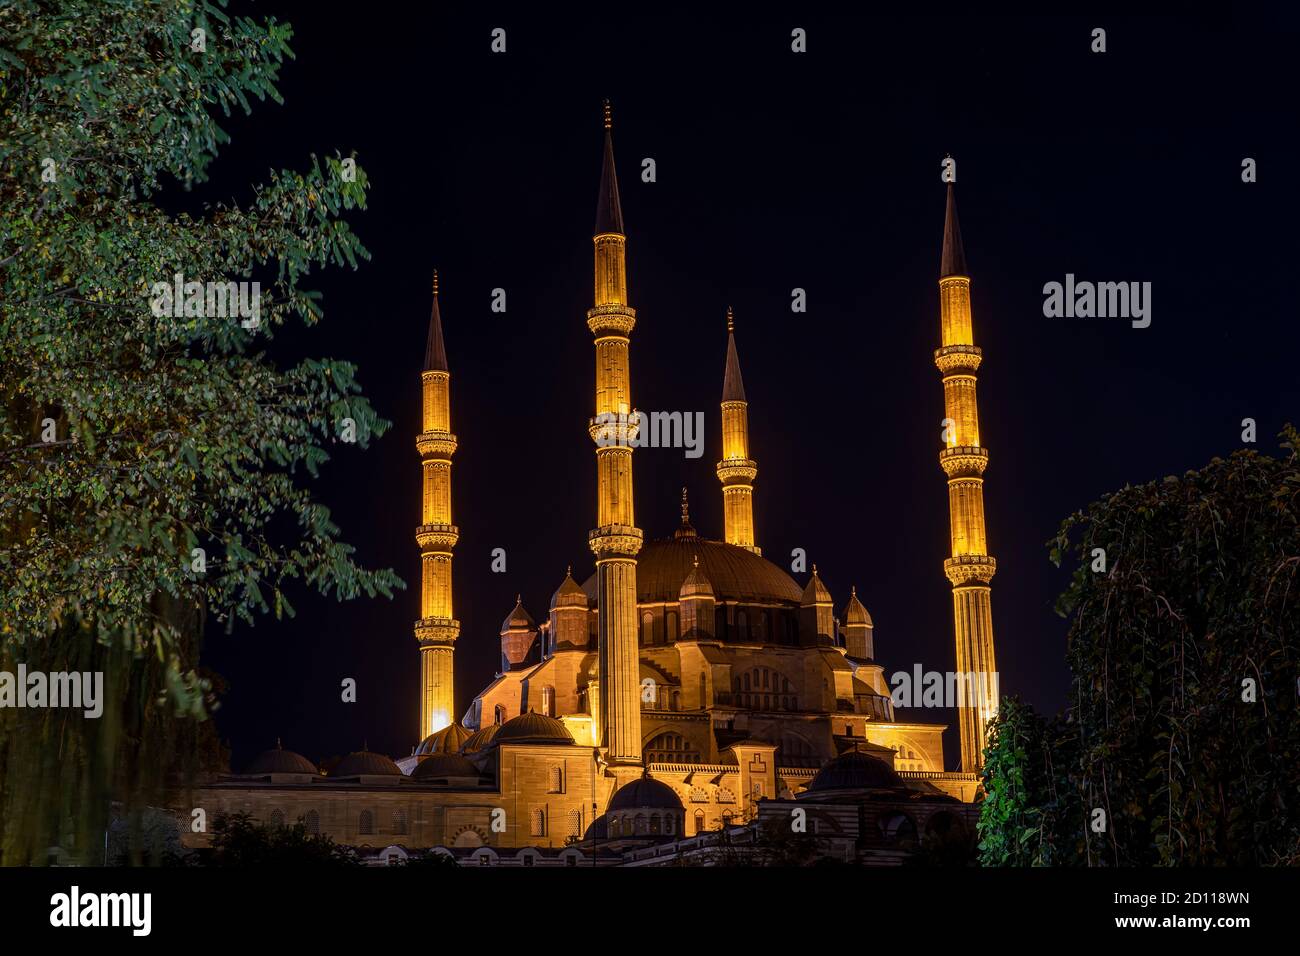 Die Selimiye Moschee ist eine osmanische kaiserliche Moschee, die sich in der Stadt Edirne befindet. Allgemeine Ansicht von Selimiye Moschee mit Denkmälern und Statue Stockfoto